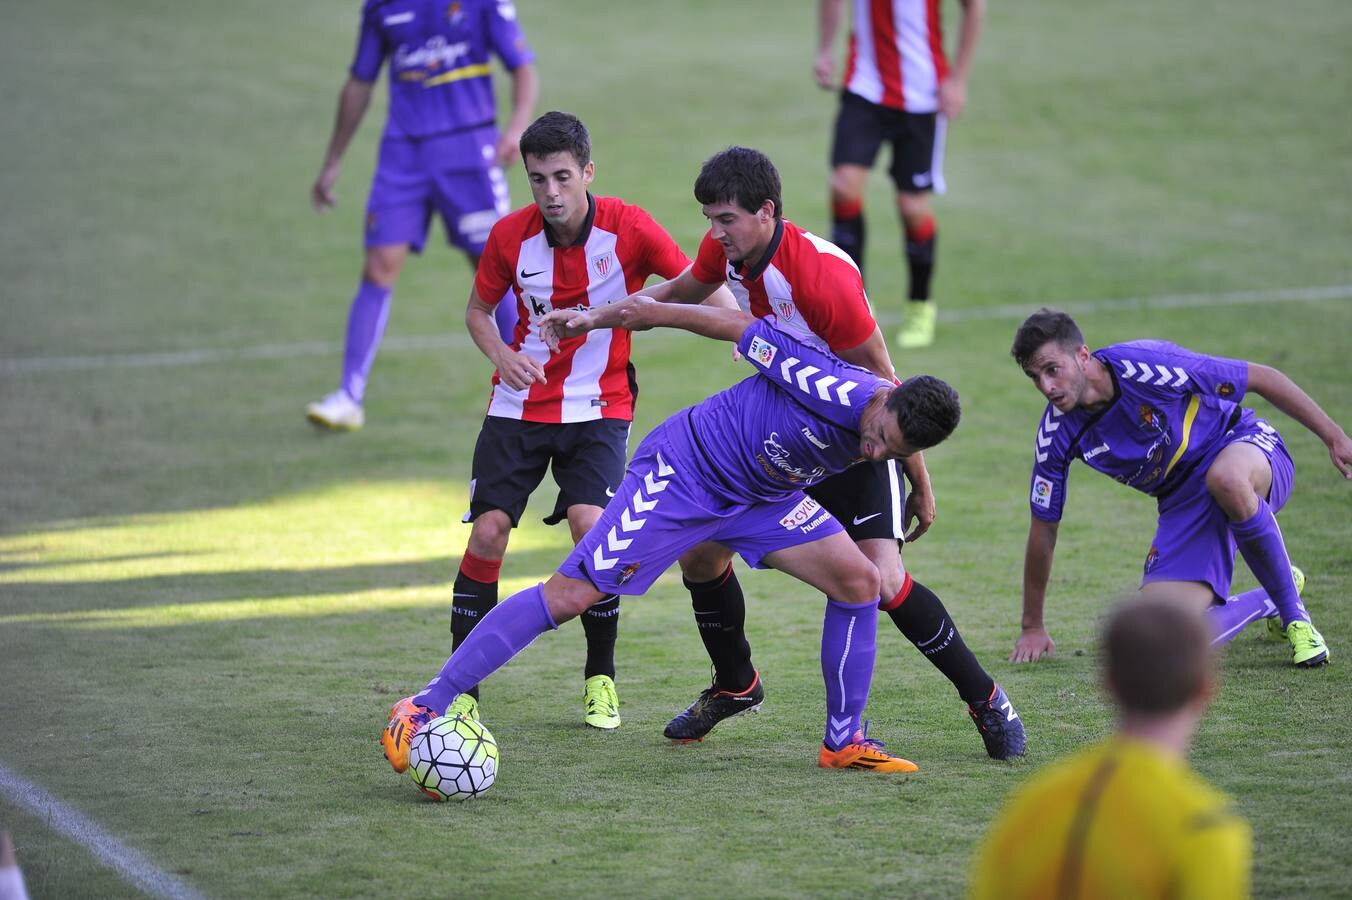 Amistoso Athletic-Valladolid en Las Llanas